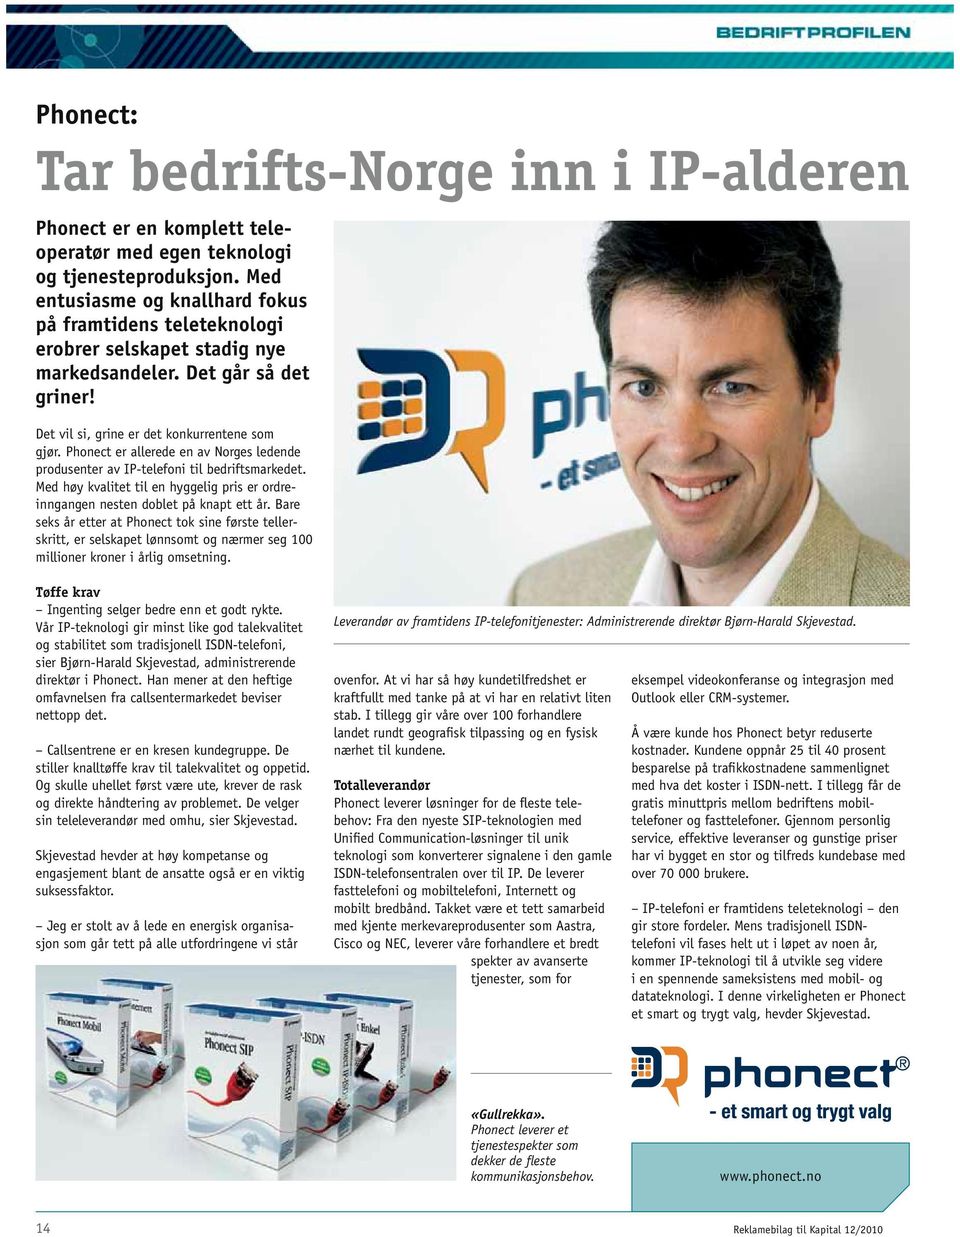 Phonect er allerede en av Norges ledende produsenter av IP-telefoni til bedriftsmarkedet. Med høy kvalitet til en hyggelig pris er ordreinngangen nesten doblet på knapt ett år.